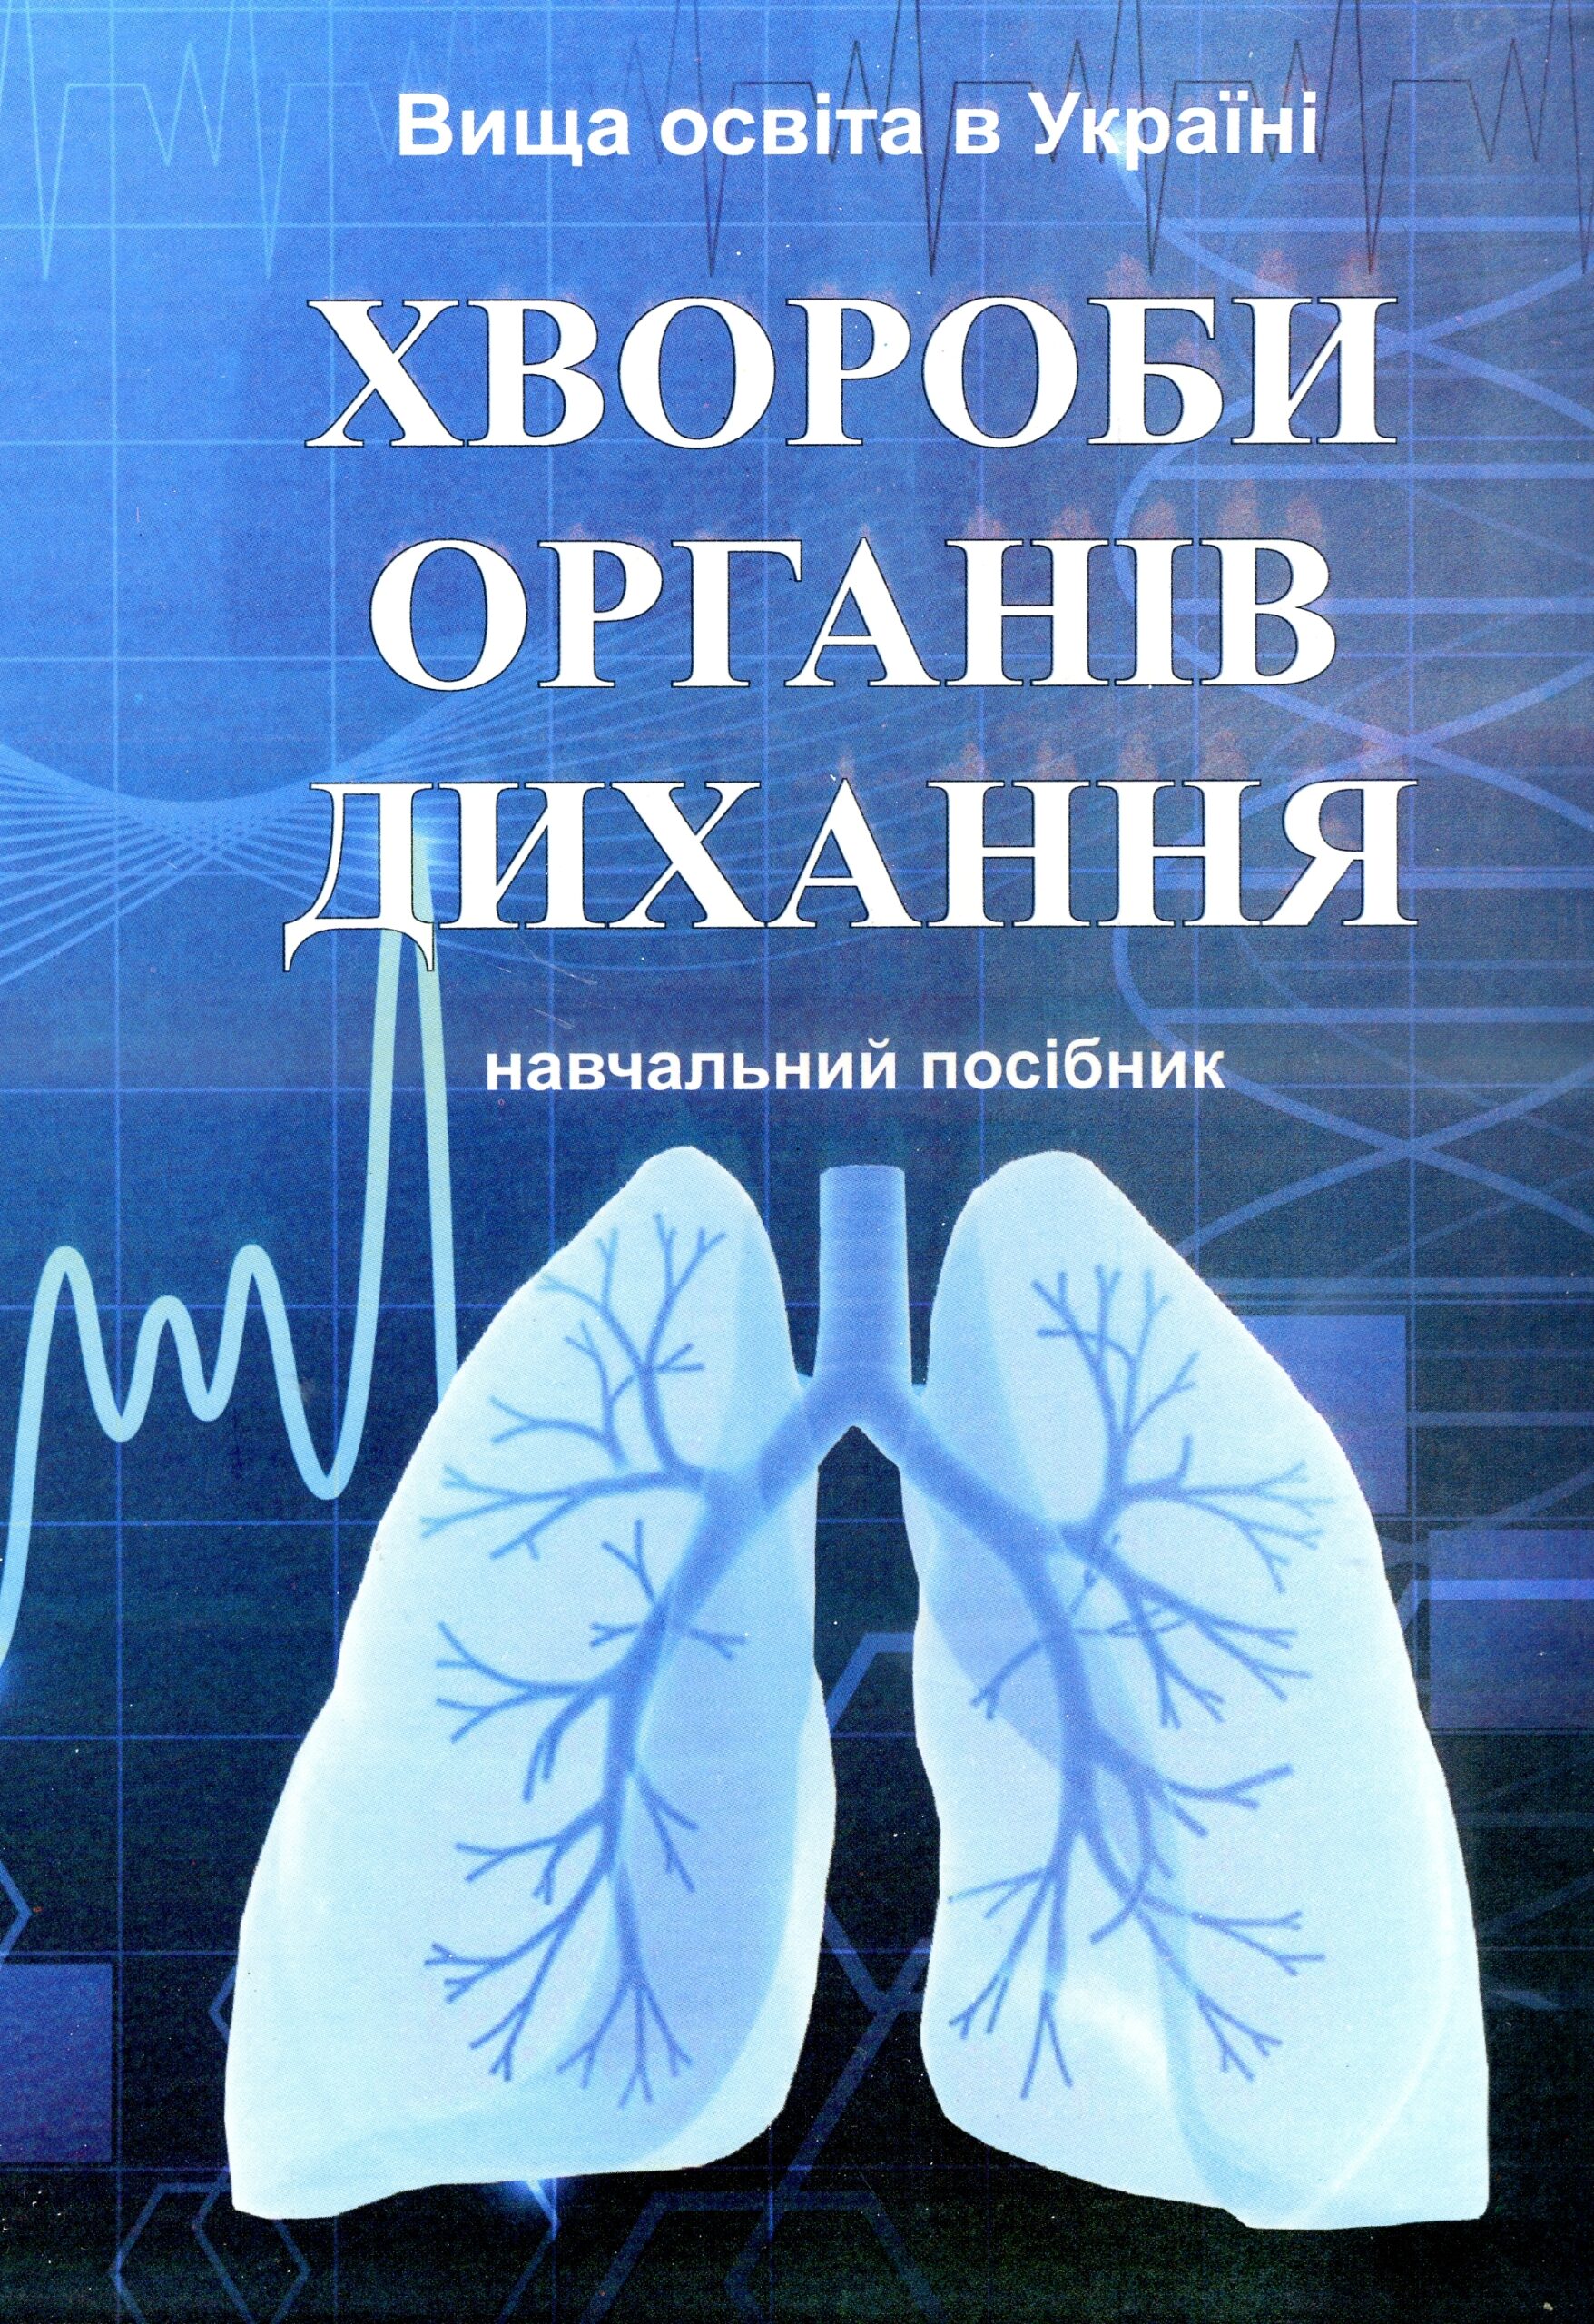 хвороби органів дихання